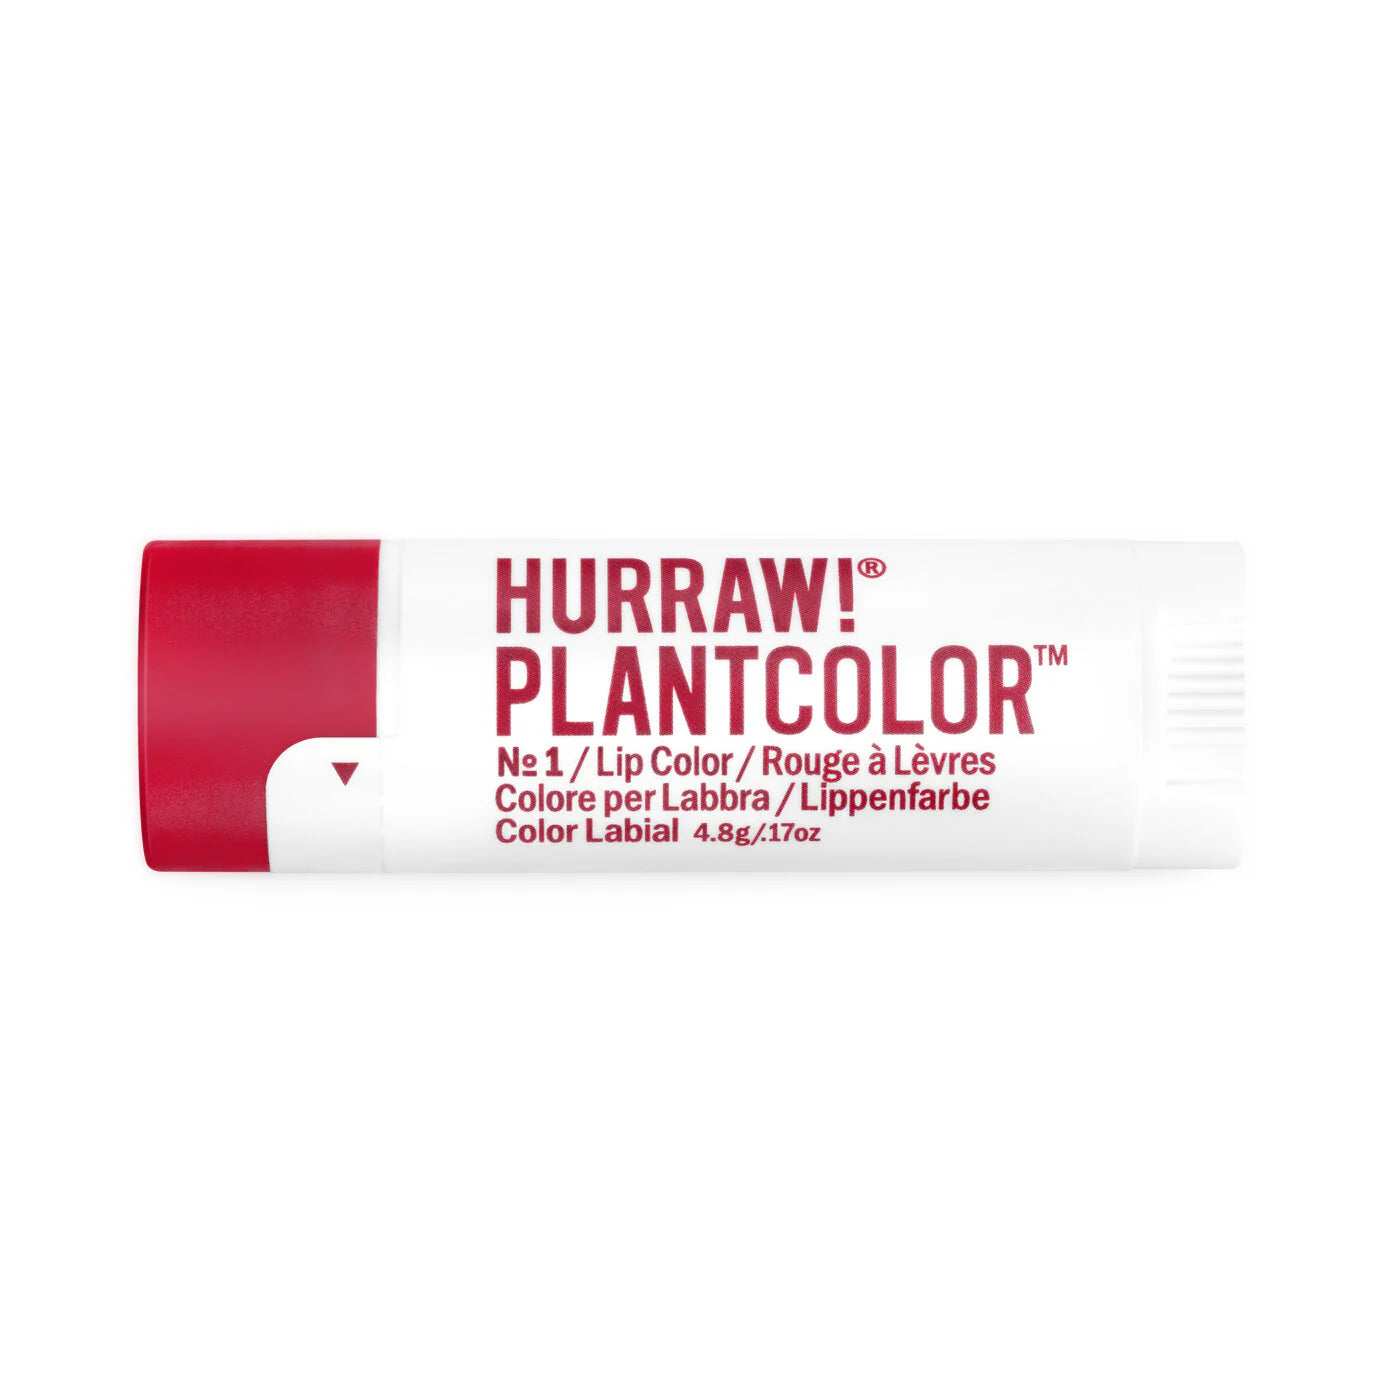 Hurraw Plantcolor Lip Color No 1